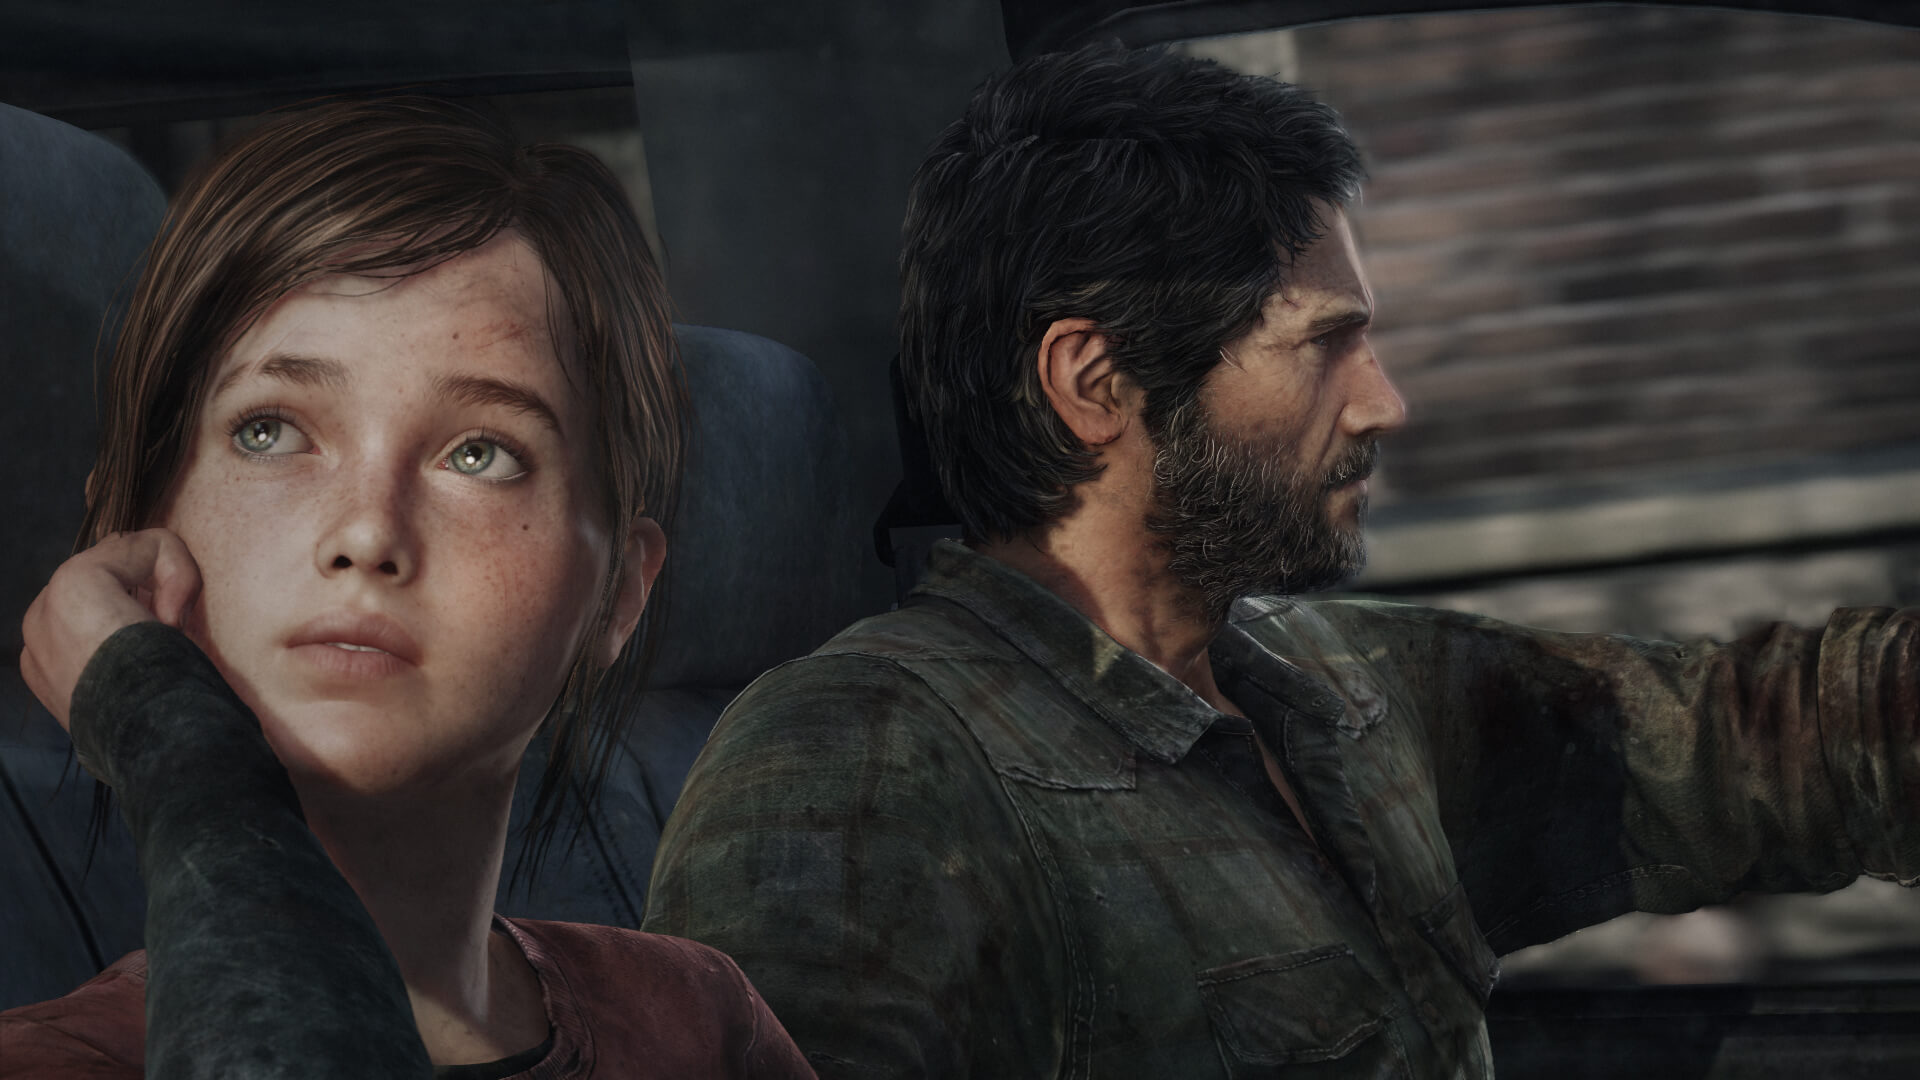 Productor de la serie The Last of Us afirma que habrá novedades pronto